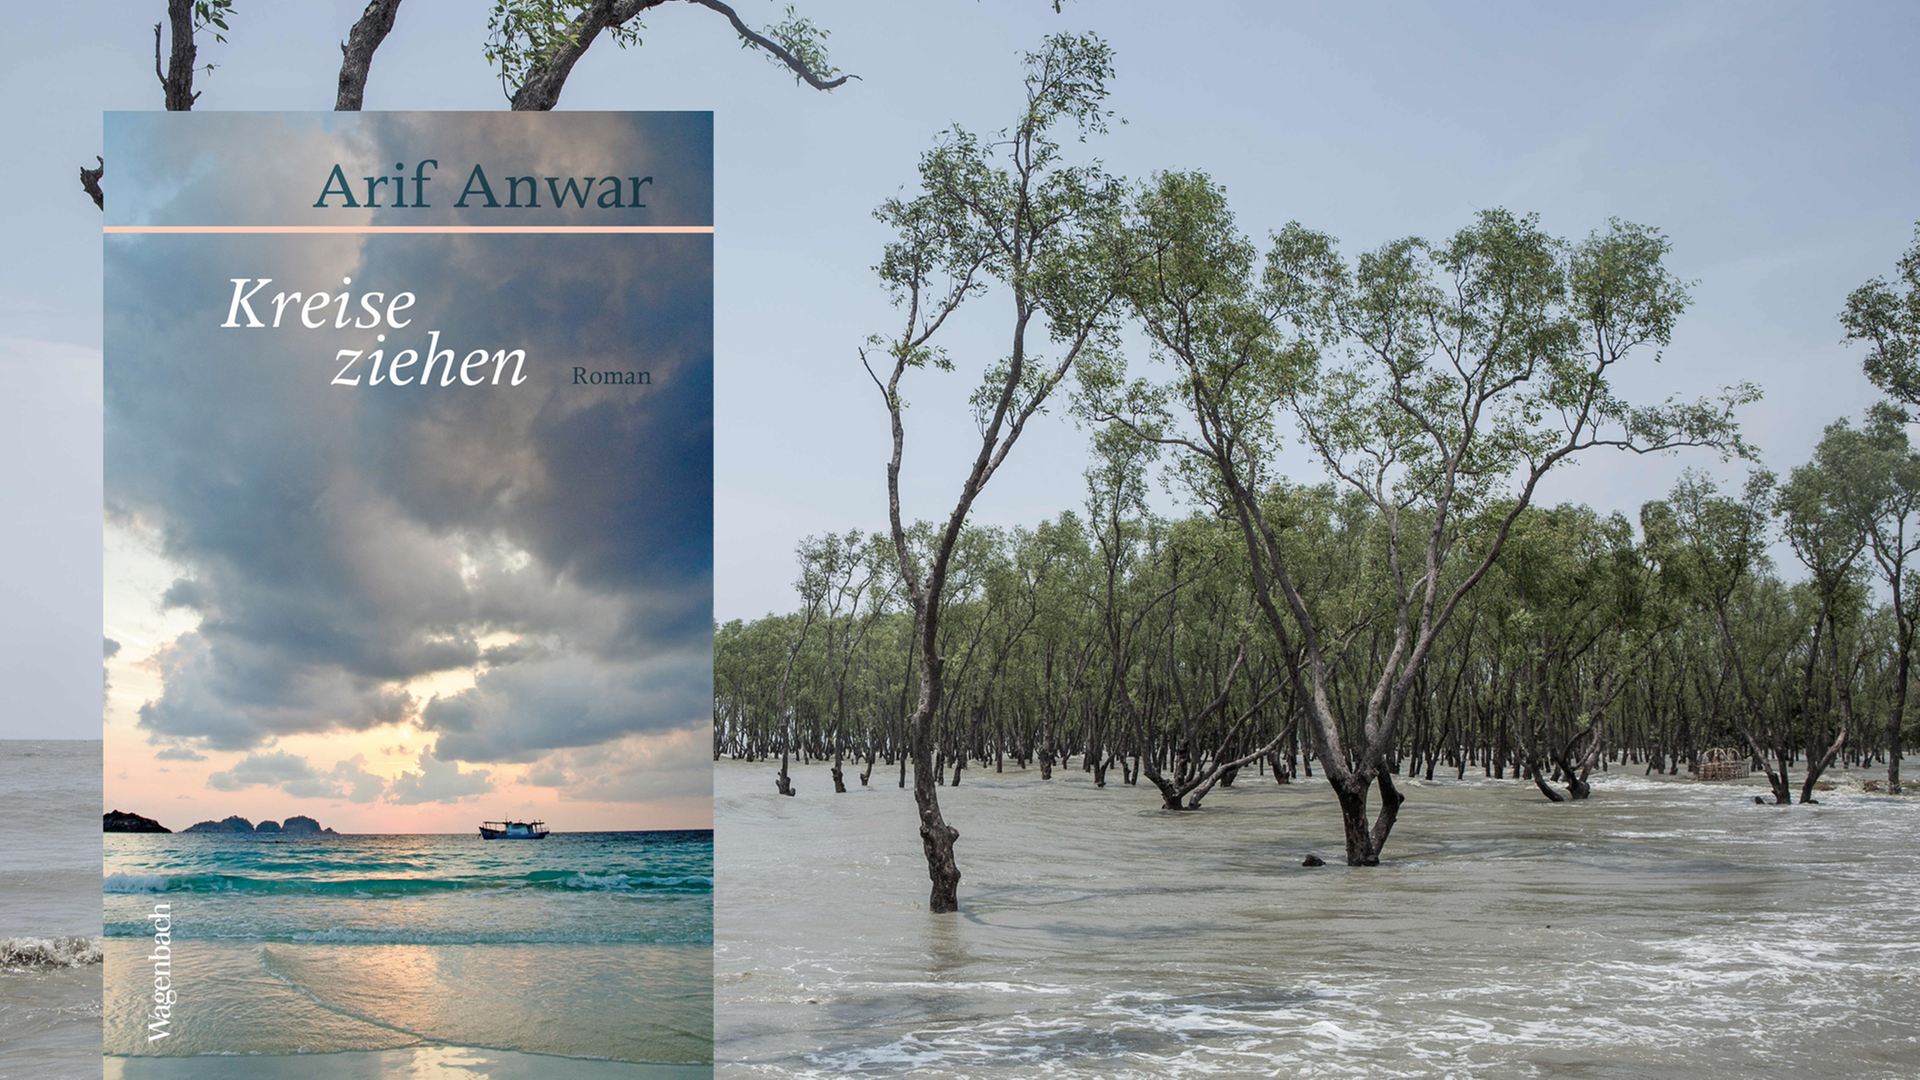 Im Vordergrund ist das Cover des Buches "Kreise ziehen" von Arif Anwar. Im Hintergrund sind Bäume in Bangladesch zu sehen, die durch einen Wirbelsturm unter Wasser gesetzt wurden sind.